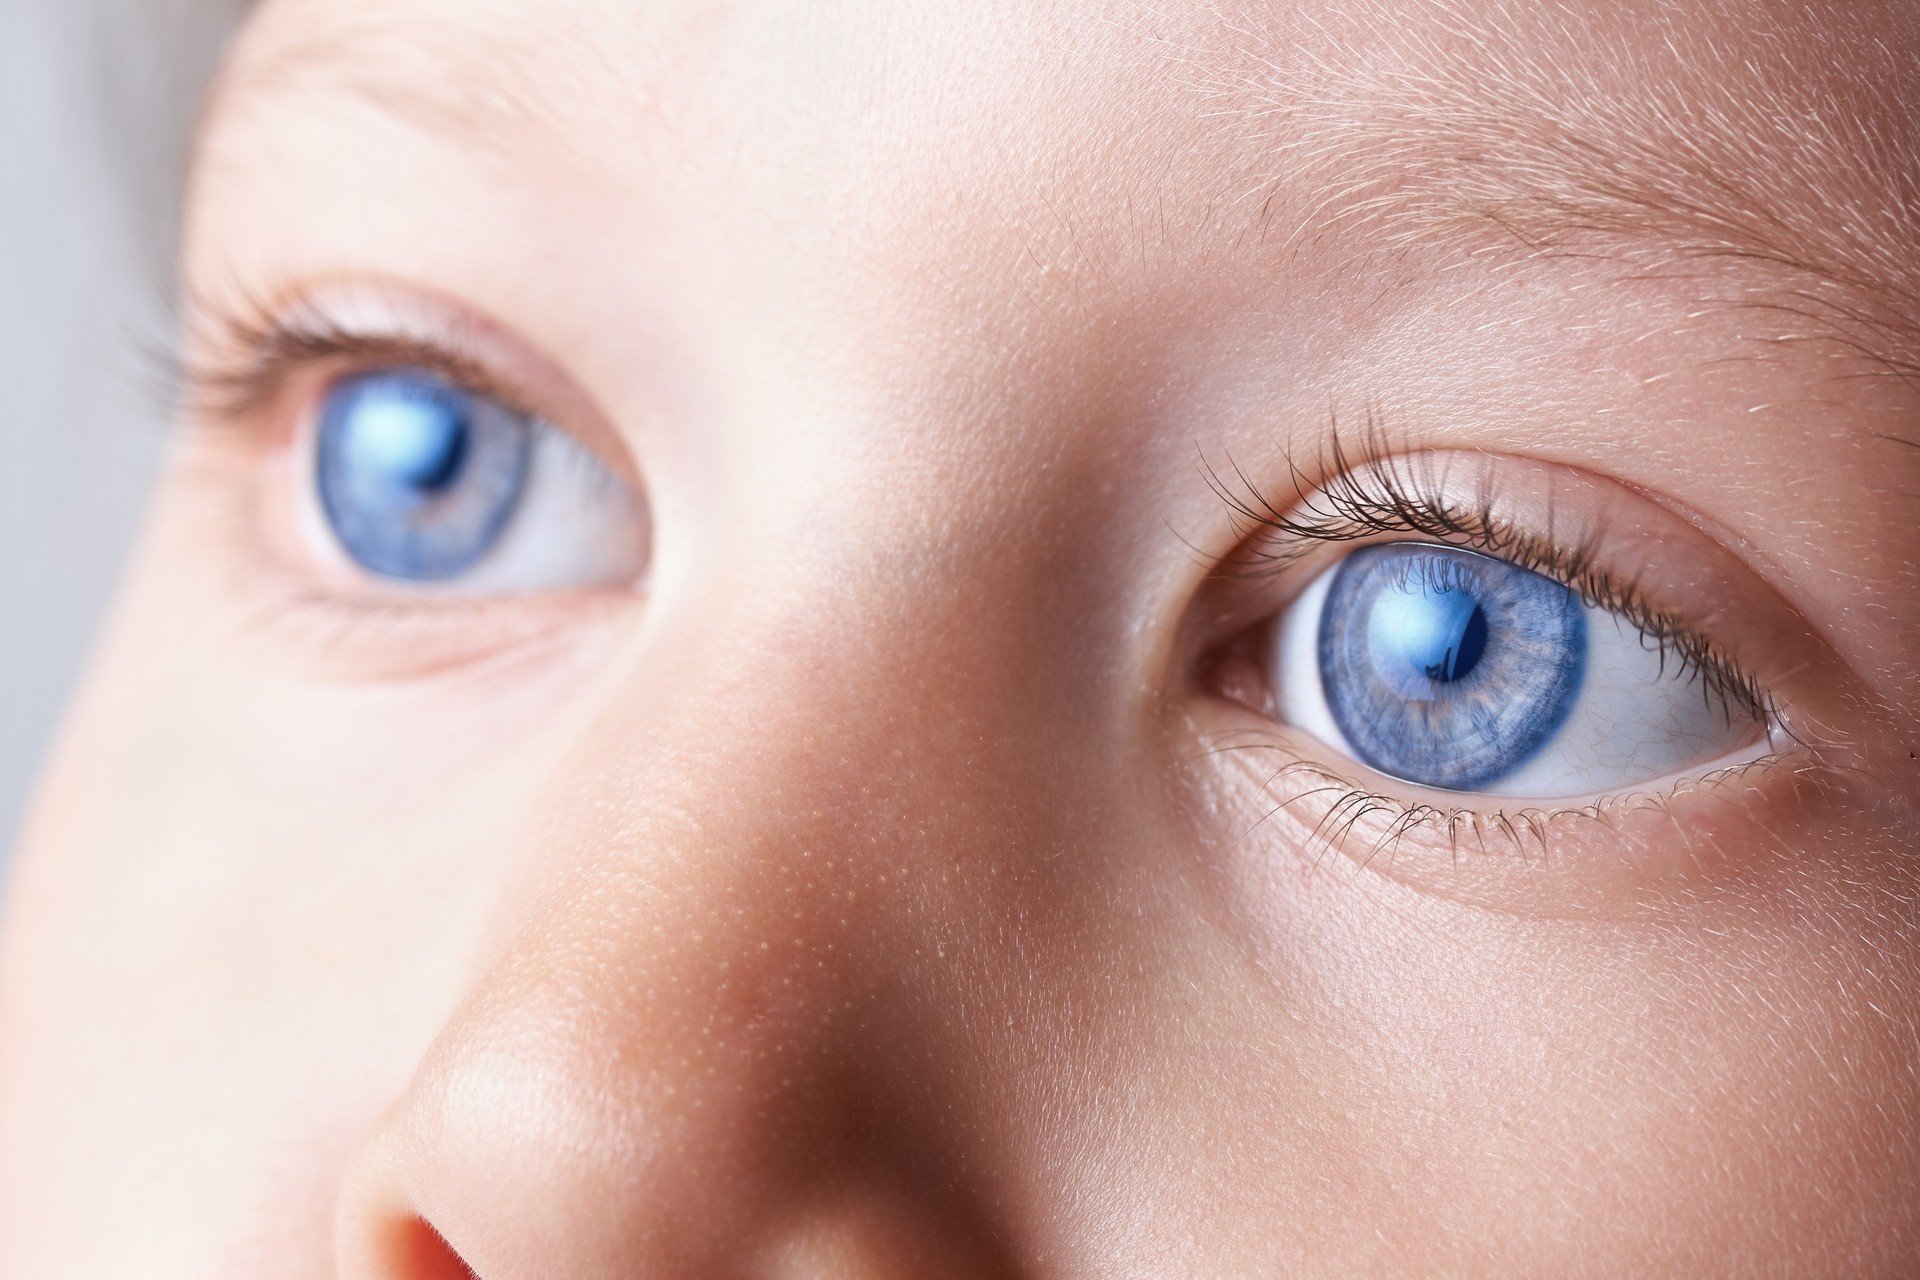 Siatkówczak złośliwy, czyli nowotwór gałki ocznej u dzieci – przyczyny,  objawy, rozpoznanie i leczenie | Strona Zdrowia